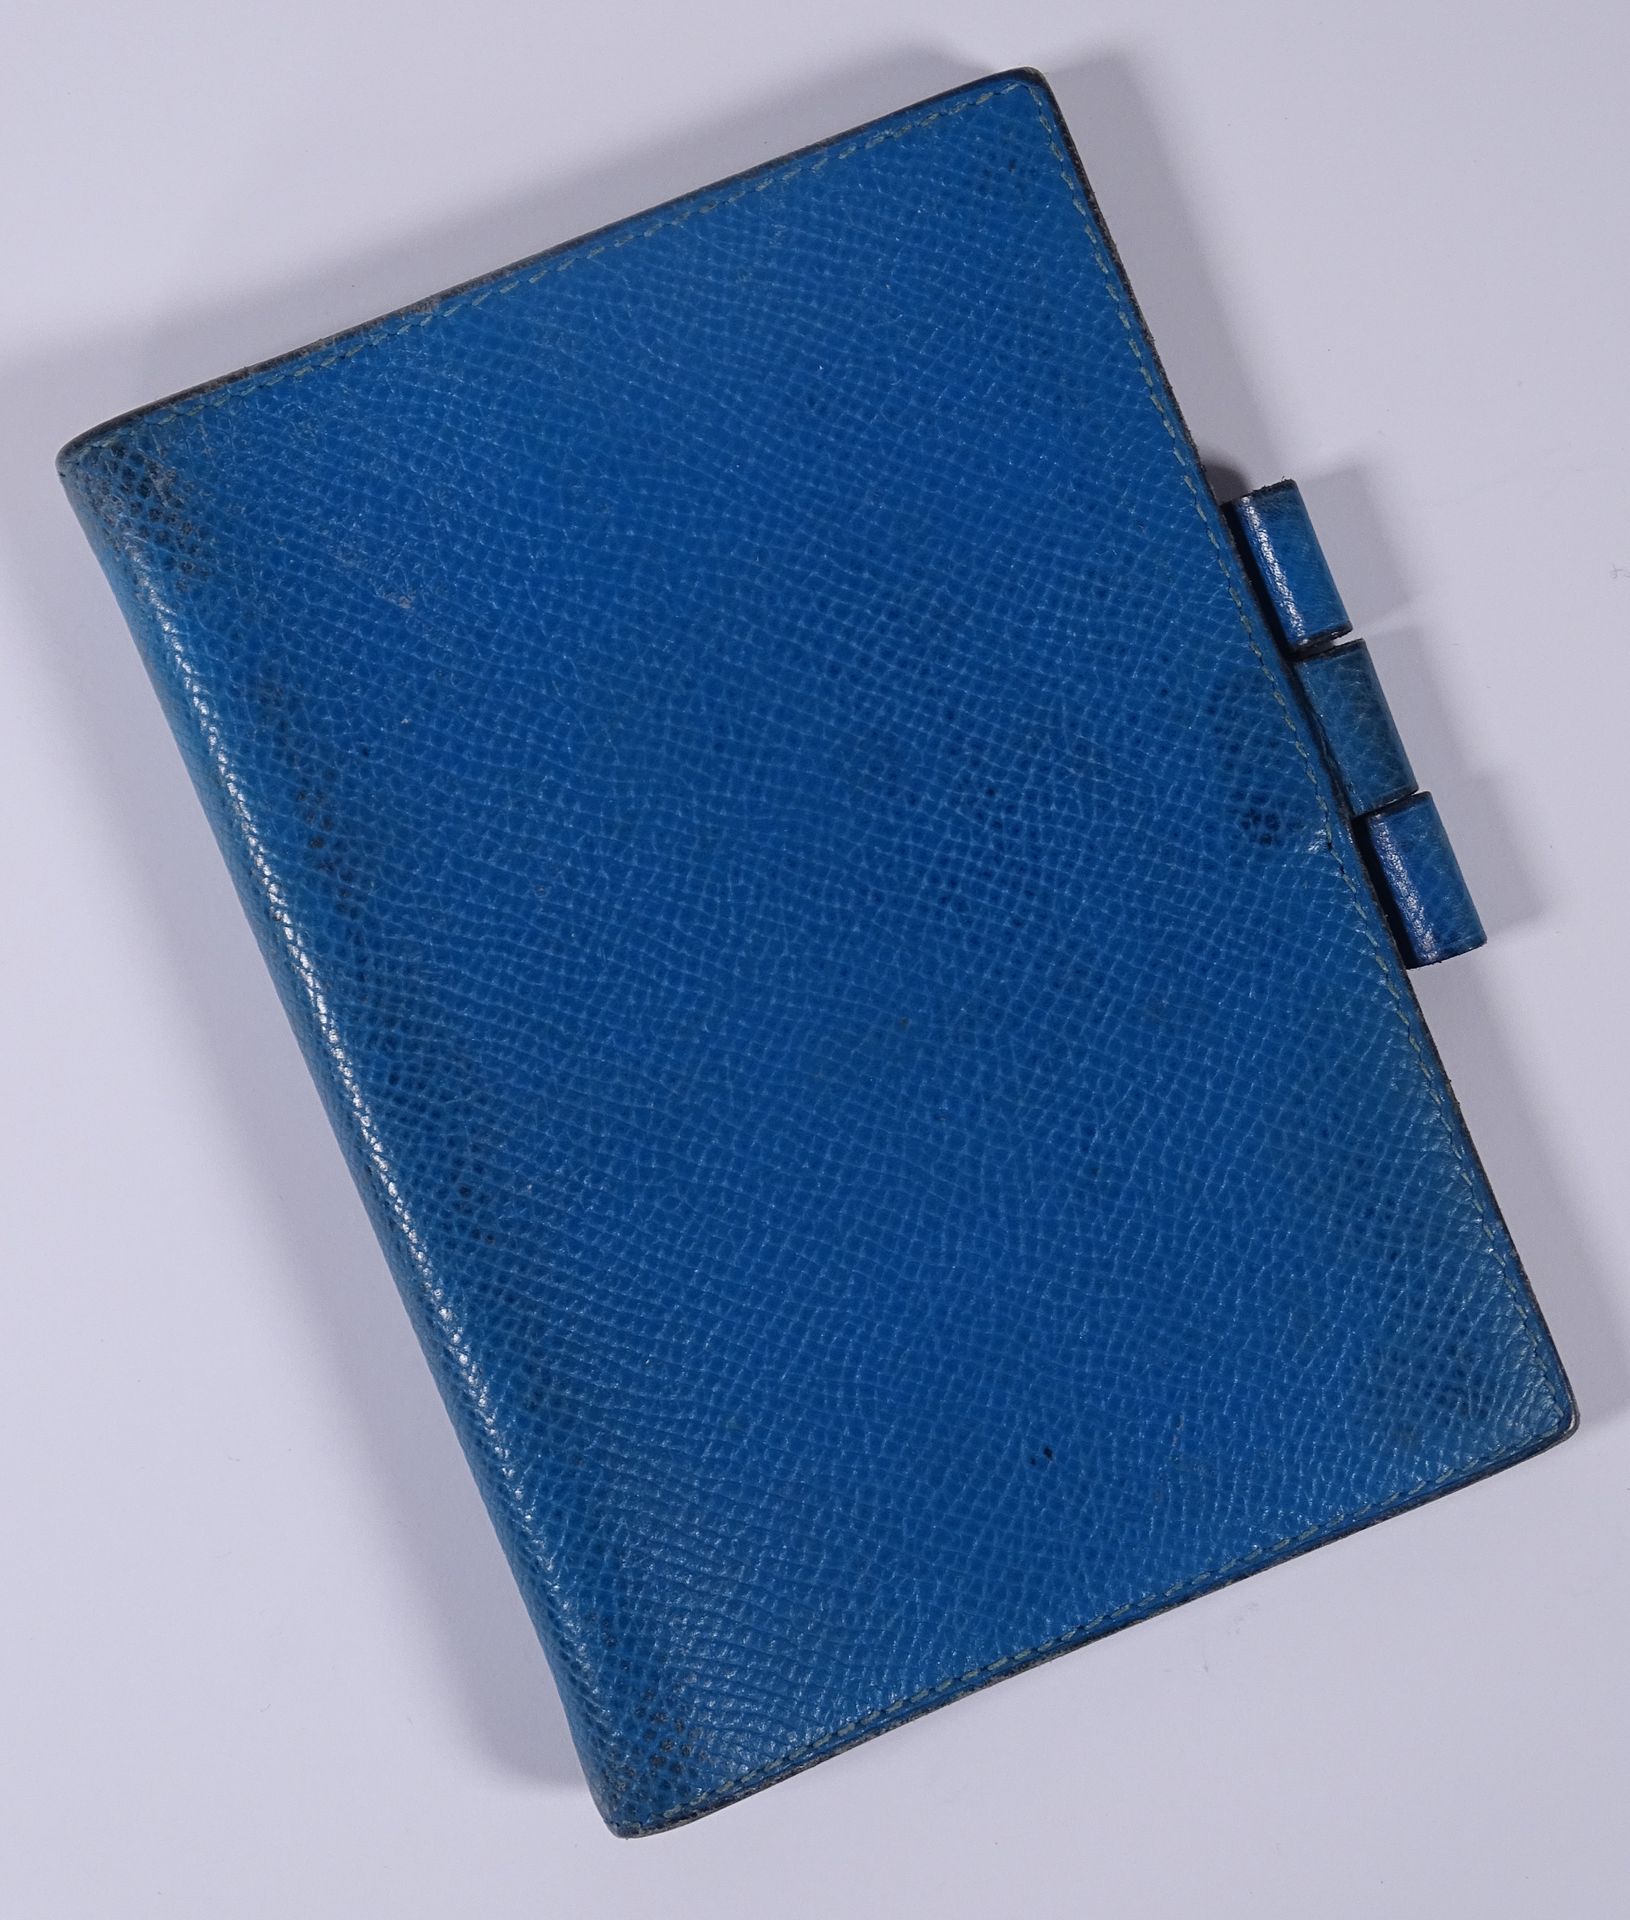 HERMES Notizmappe aus blauem Leder.

13,5 x 9,5 cm.

(Notizbuch und Stift fehlen&hellip;